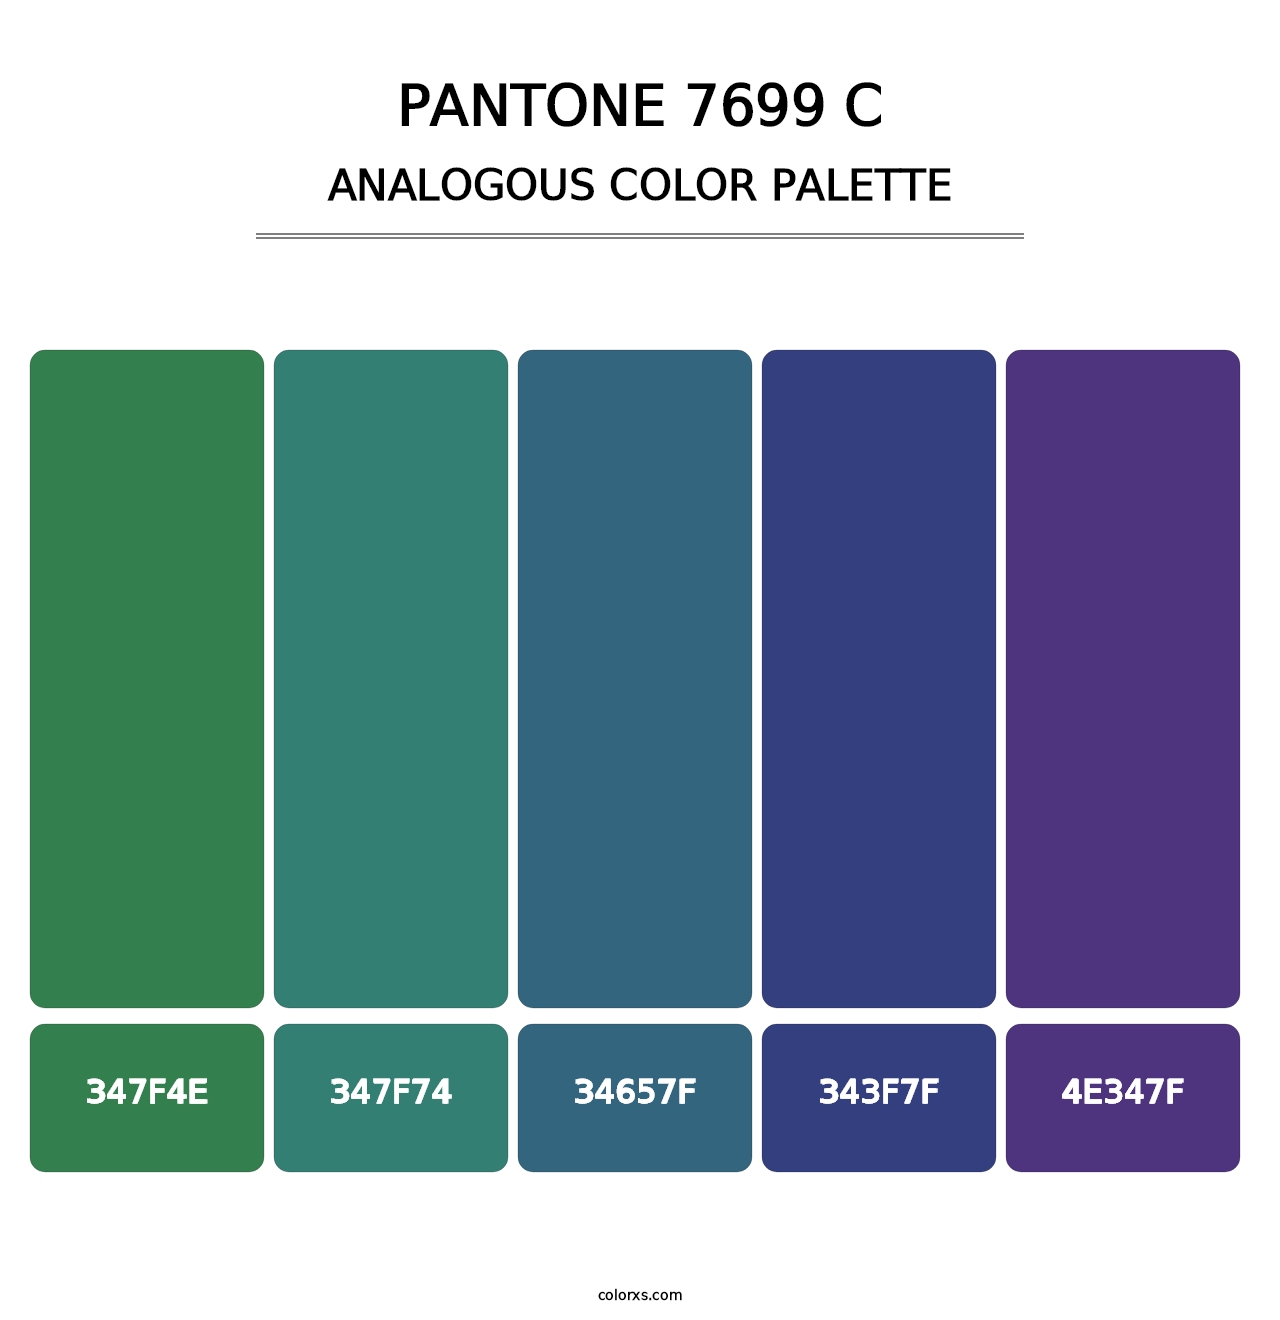 PANTONE 7699 C - Analogous Color Palette